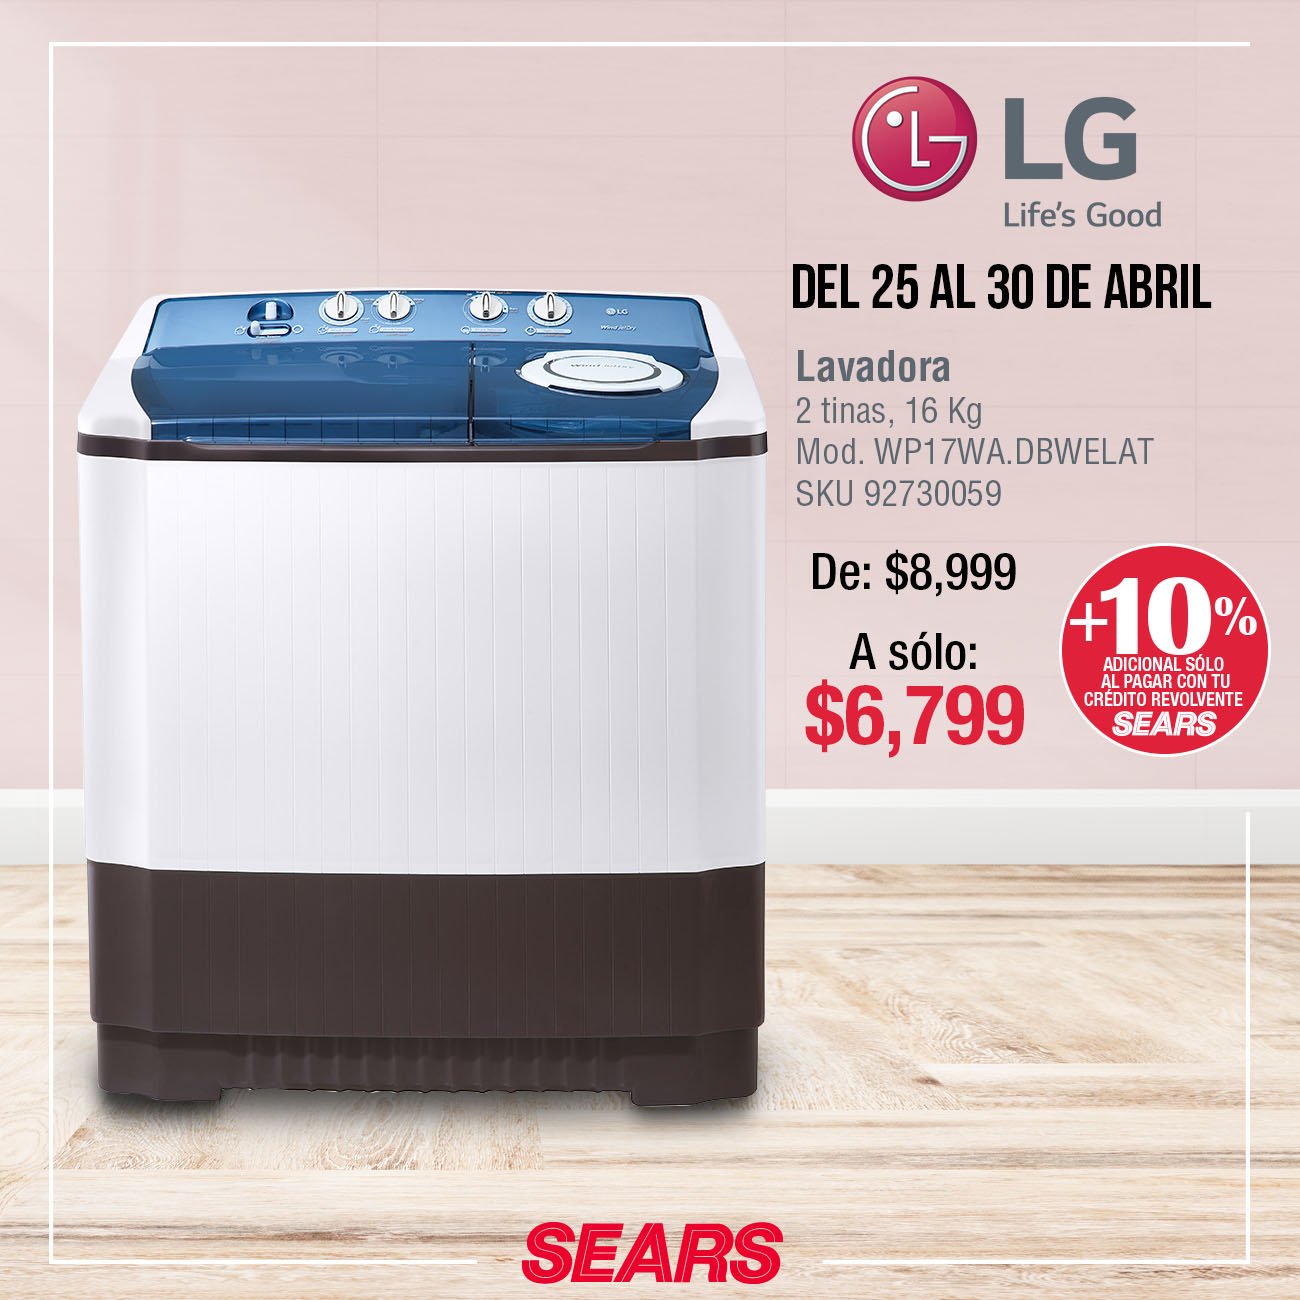 Sears México on Twitter: una lavadora a un súper precio? ¡Esta promoción te encantará! #SearsMeEntiende Vigencia del 25 al 30 de abril de 2019. *Consulta bases en tienda. /